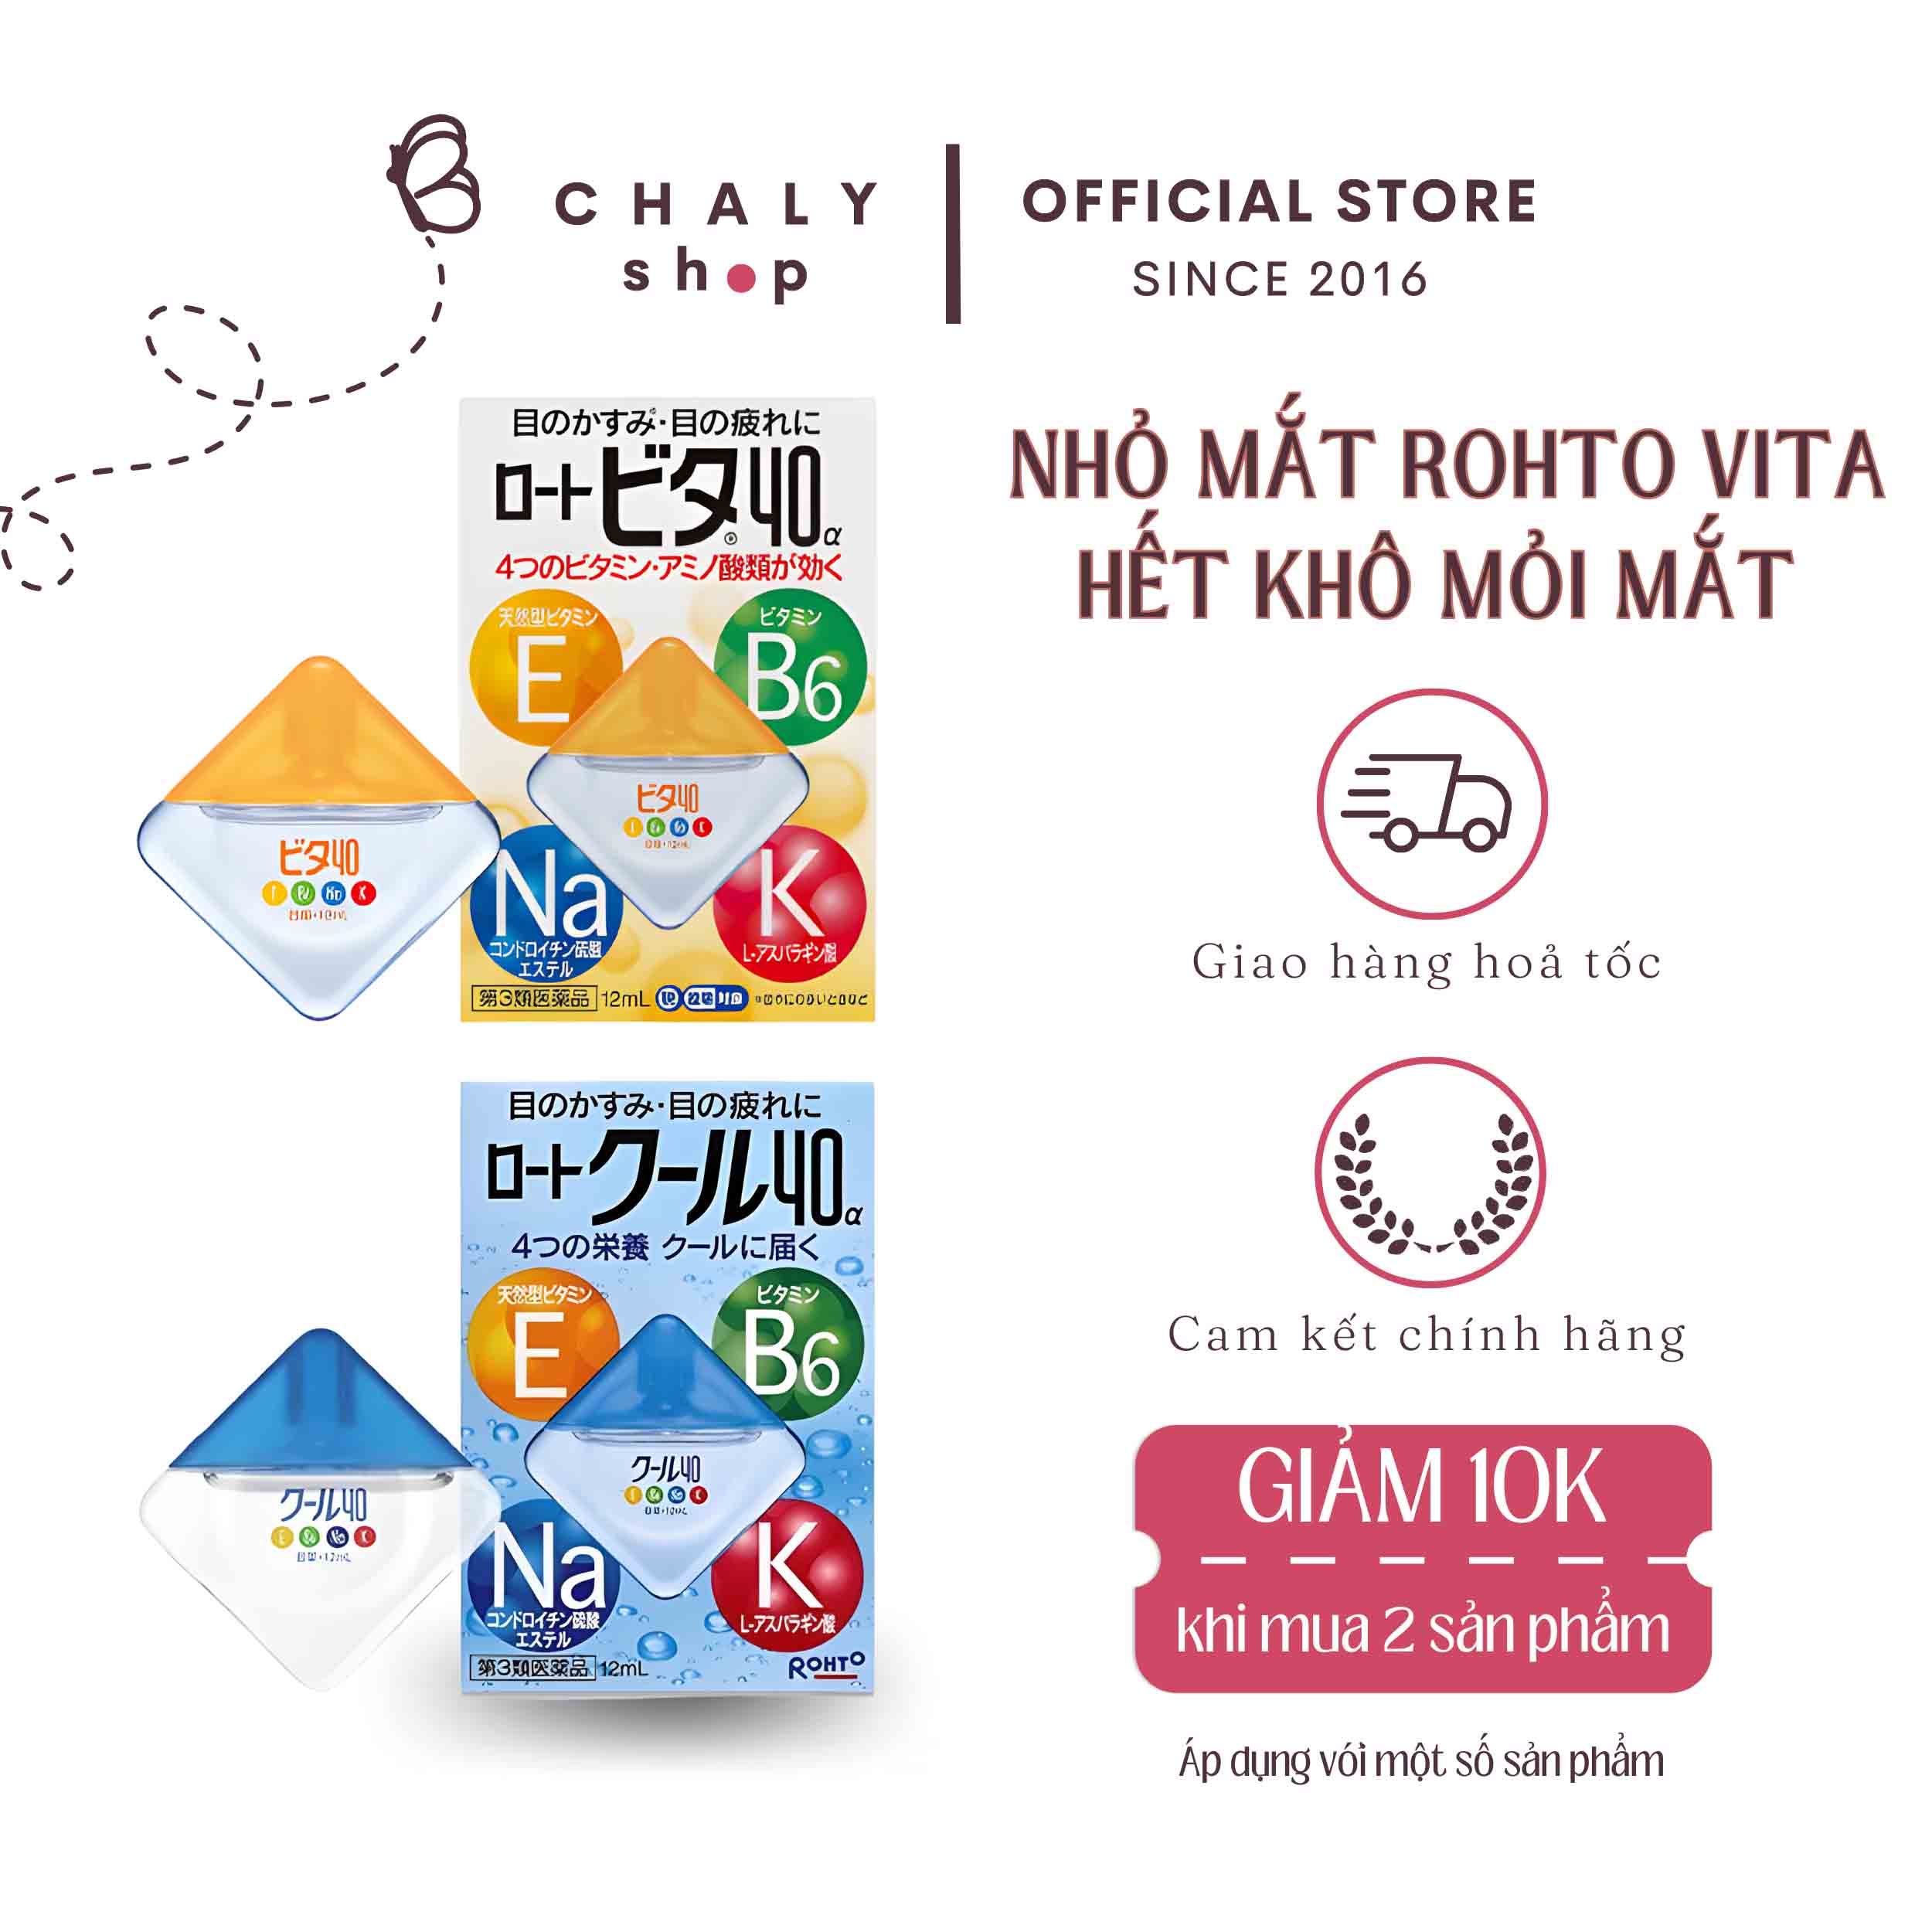 Thuốc nhỏ mắt Rohto Nhật Bản có chứa chất kali không? Tác dụng của chất kali trong thuốc là gì?
